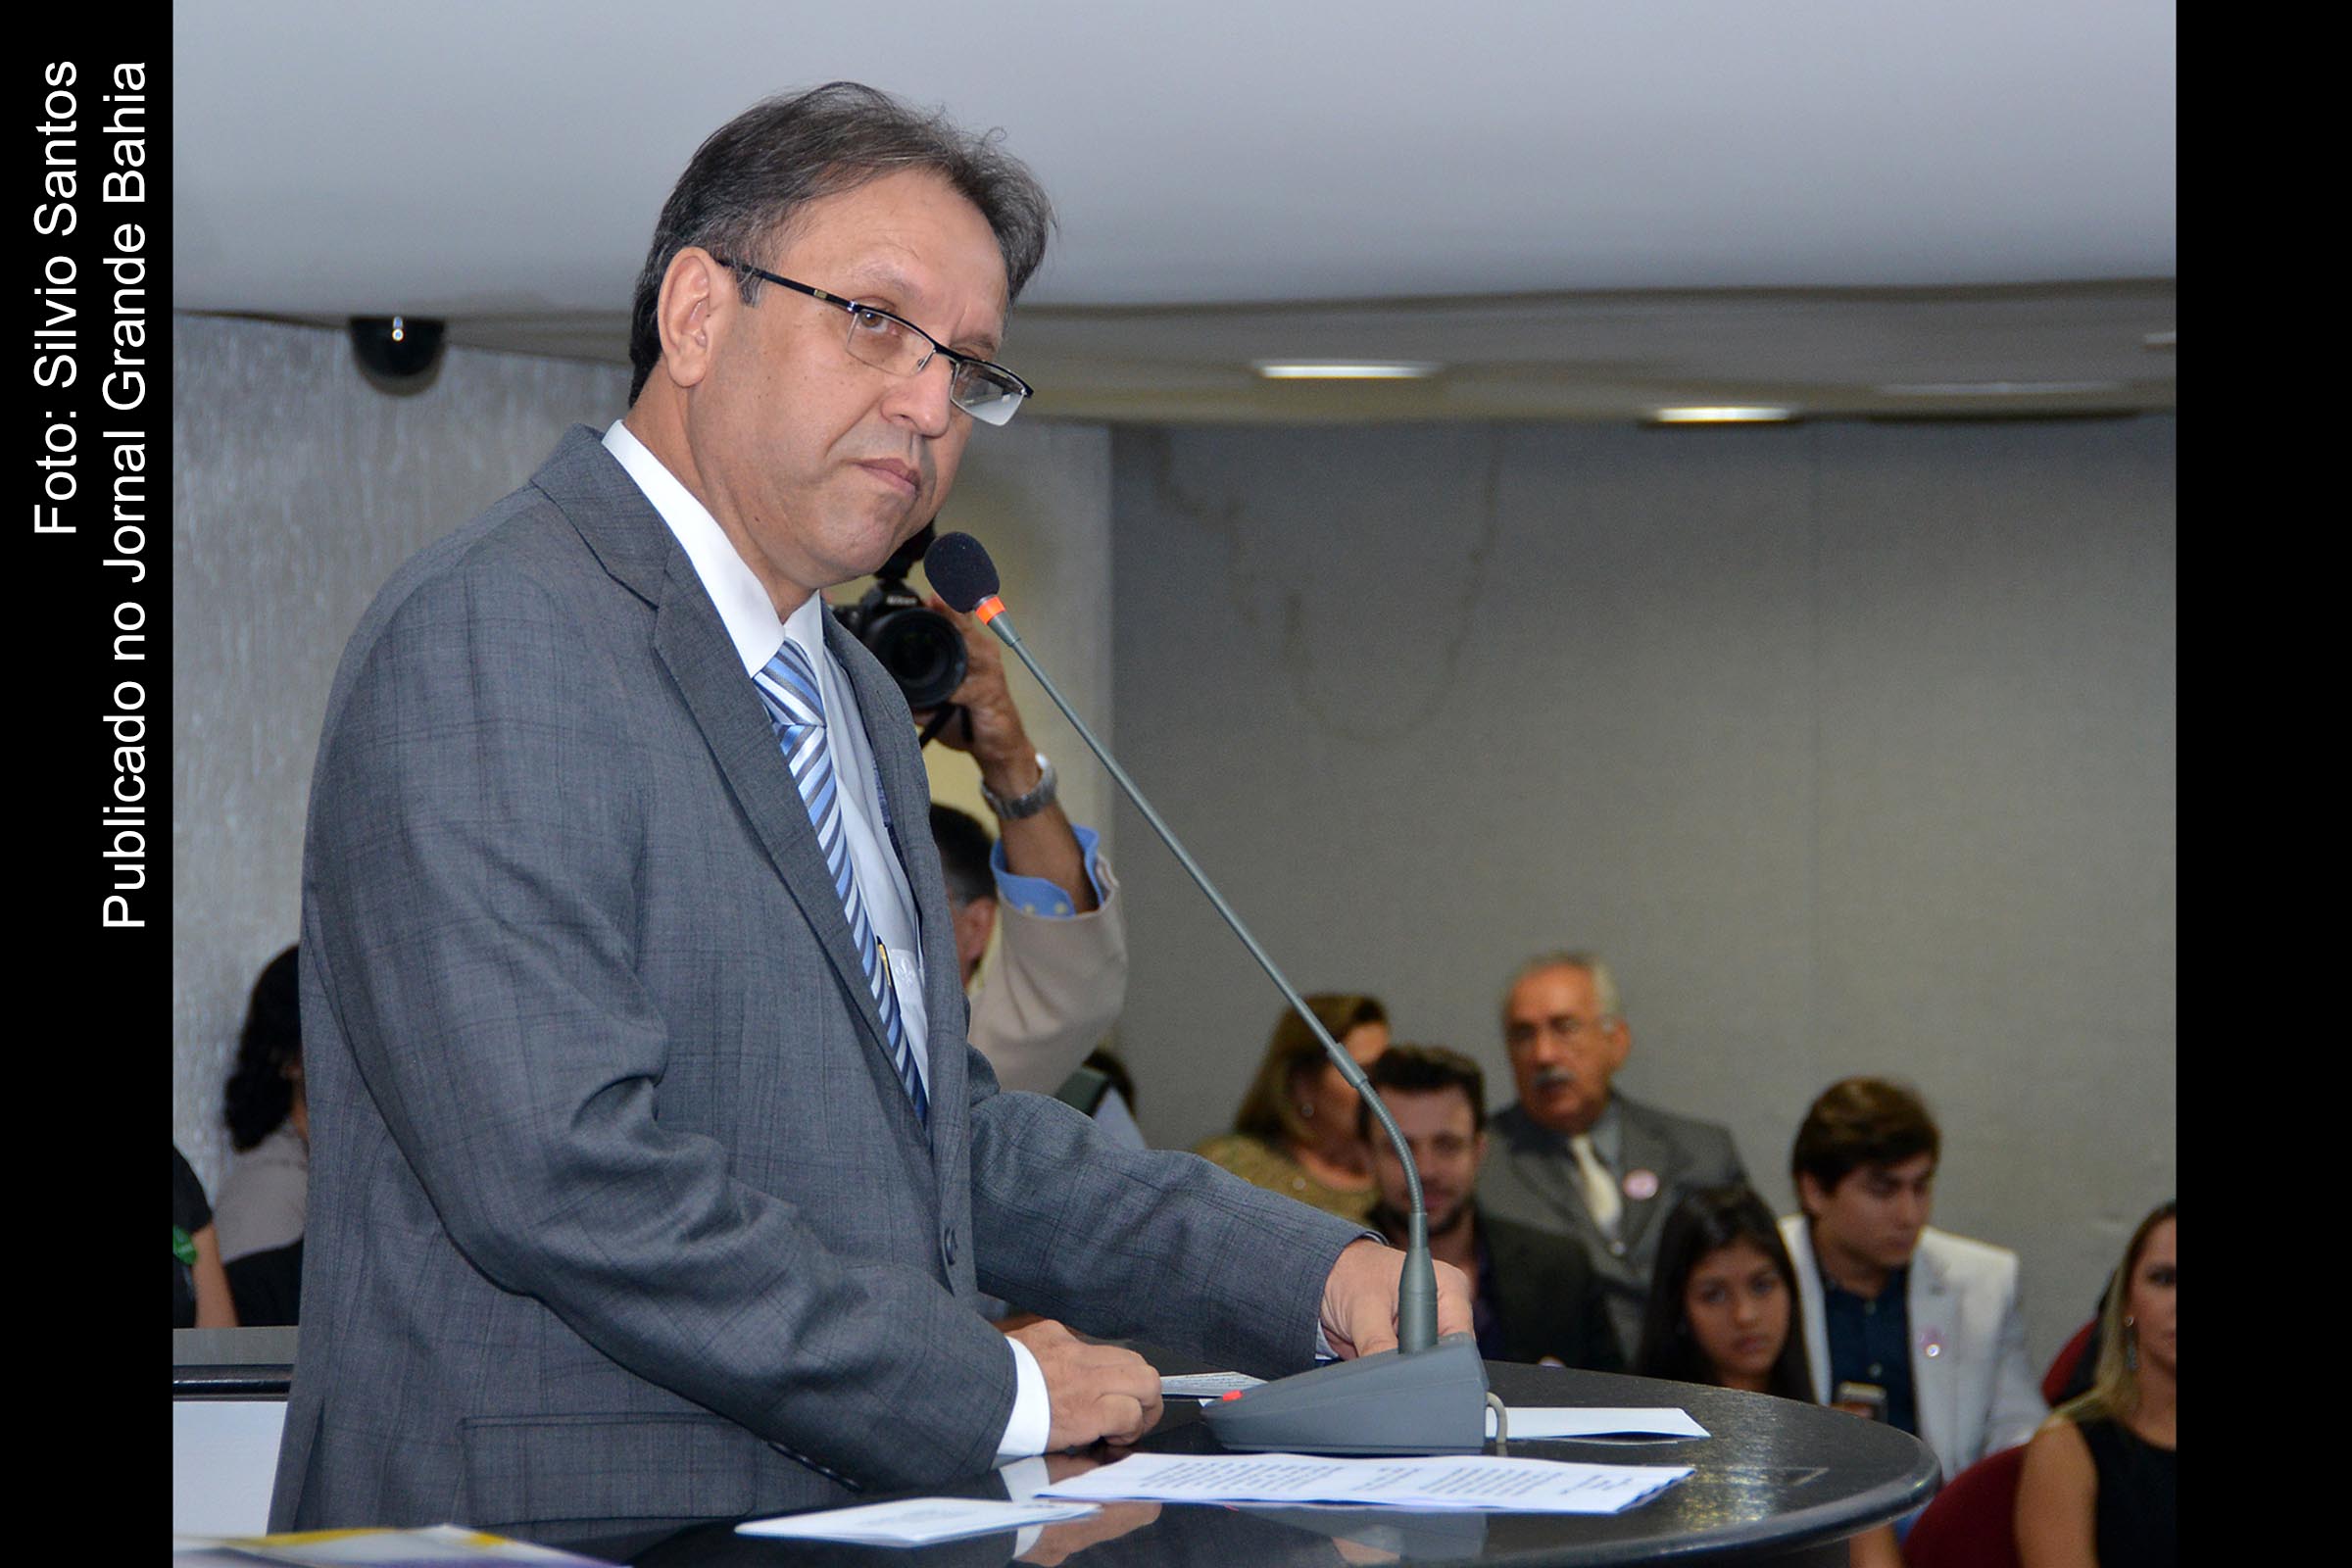 Marcelo de Carvalho Miranda (MDB), ex-governador do Tocantins. Ele é casado com a deputada federal Dulce Miranda com quem tem dois filhos.